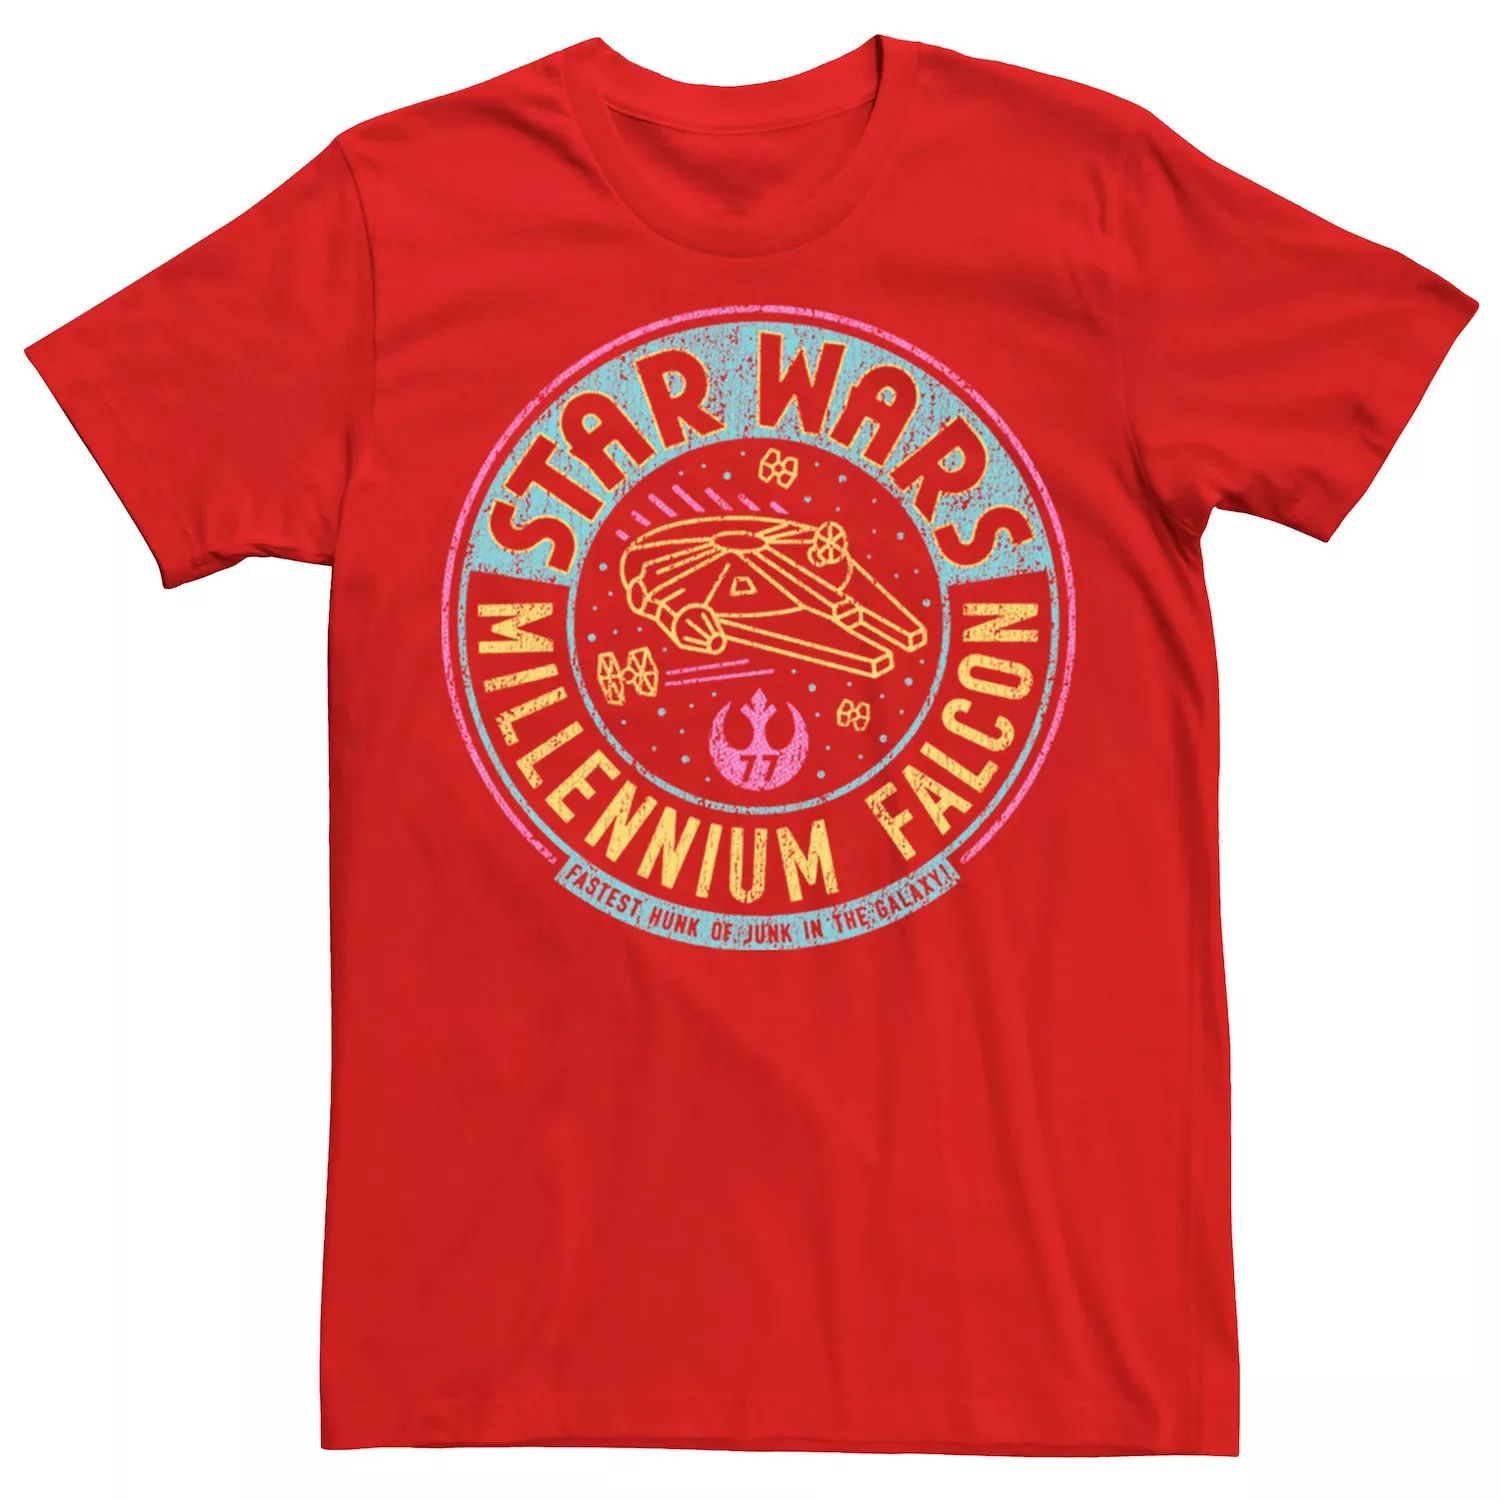 Мужская футболка с неоновым буквенным логотипом «Звездные войны: Сокол тысячелетия» Star Wars, красный мужская футболка с логотипом комиксов звездные войны сокол тысячелетия star wars